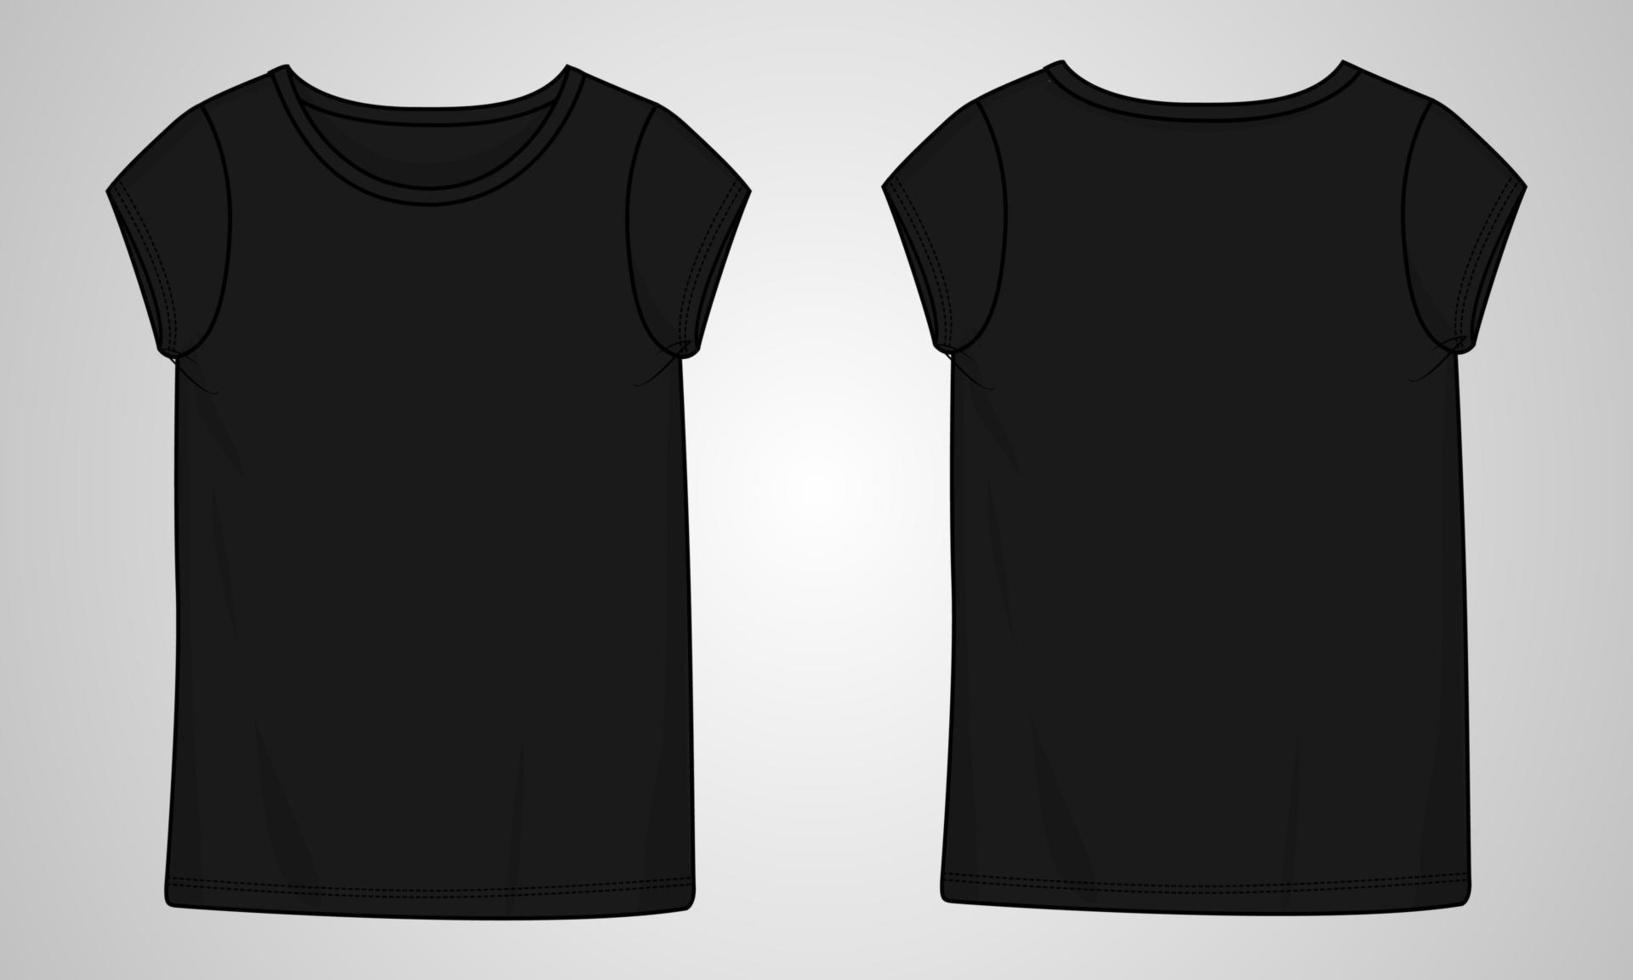 t-shirt à manches courtes en tête plat de mode technique modèle d'illustration vectorielle pour dames vecteur